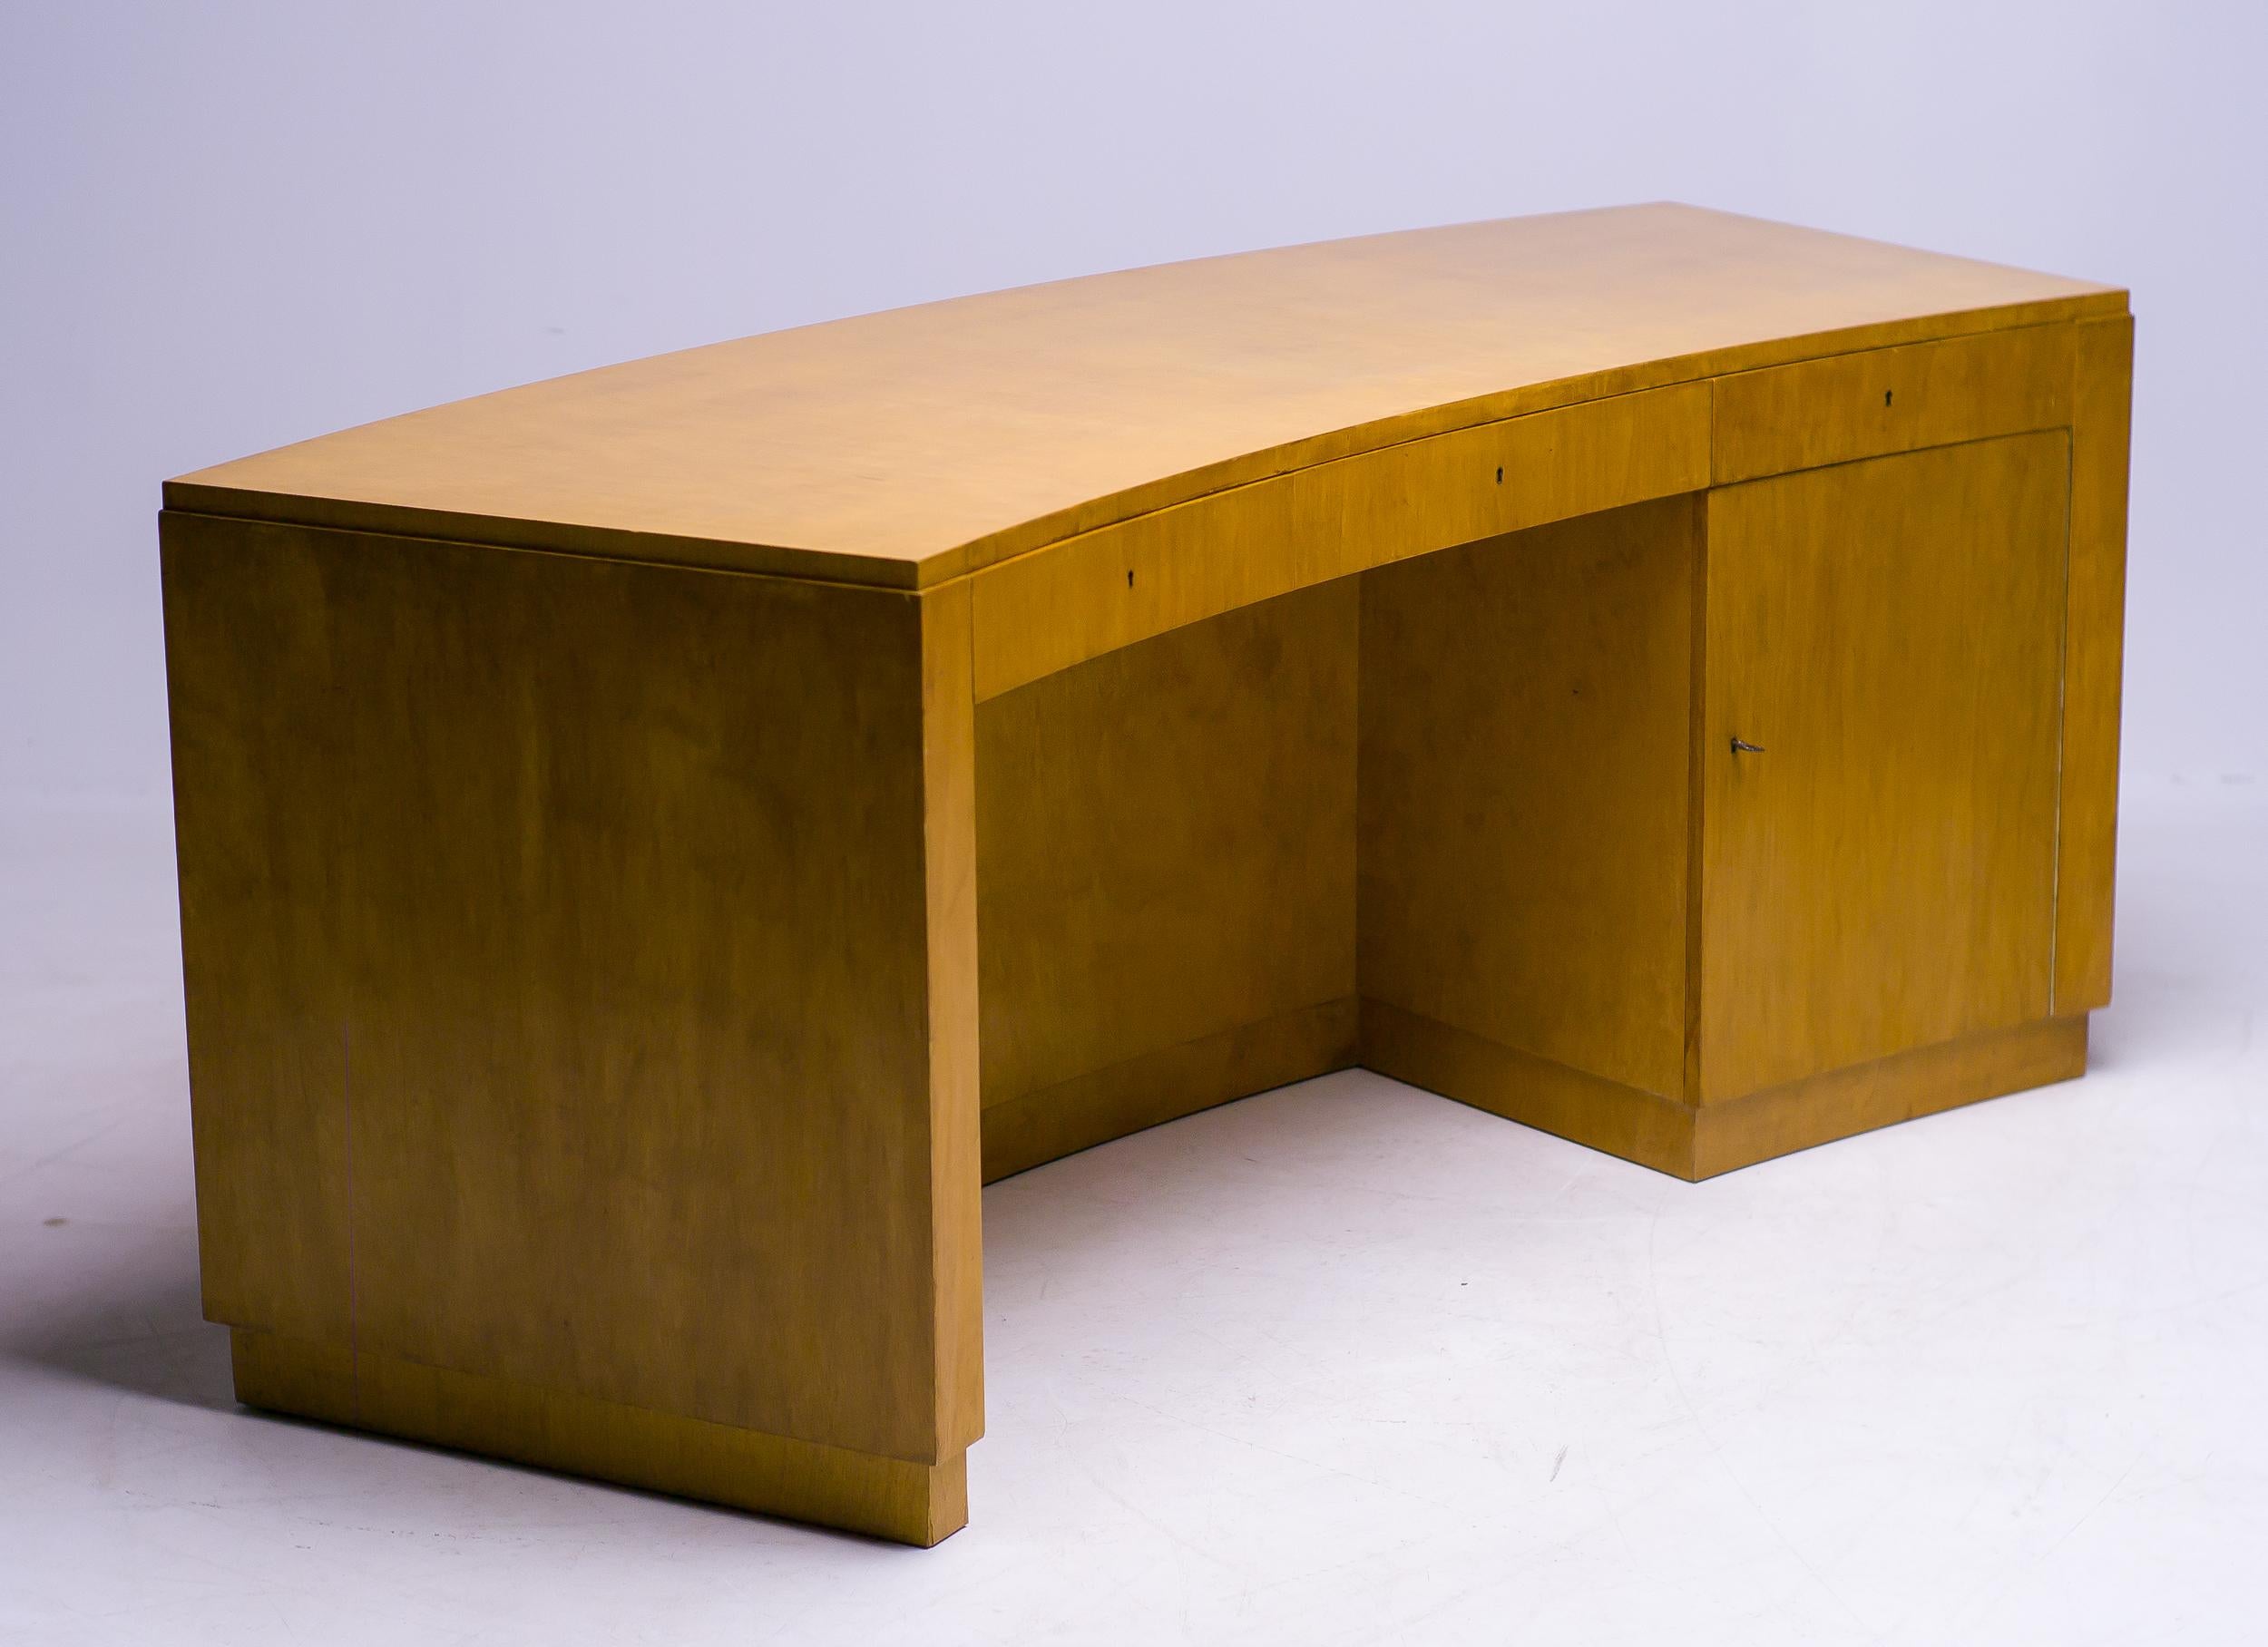 Birka Desk by Axel Einar Hjorth 1